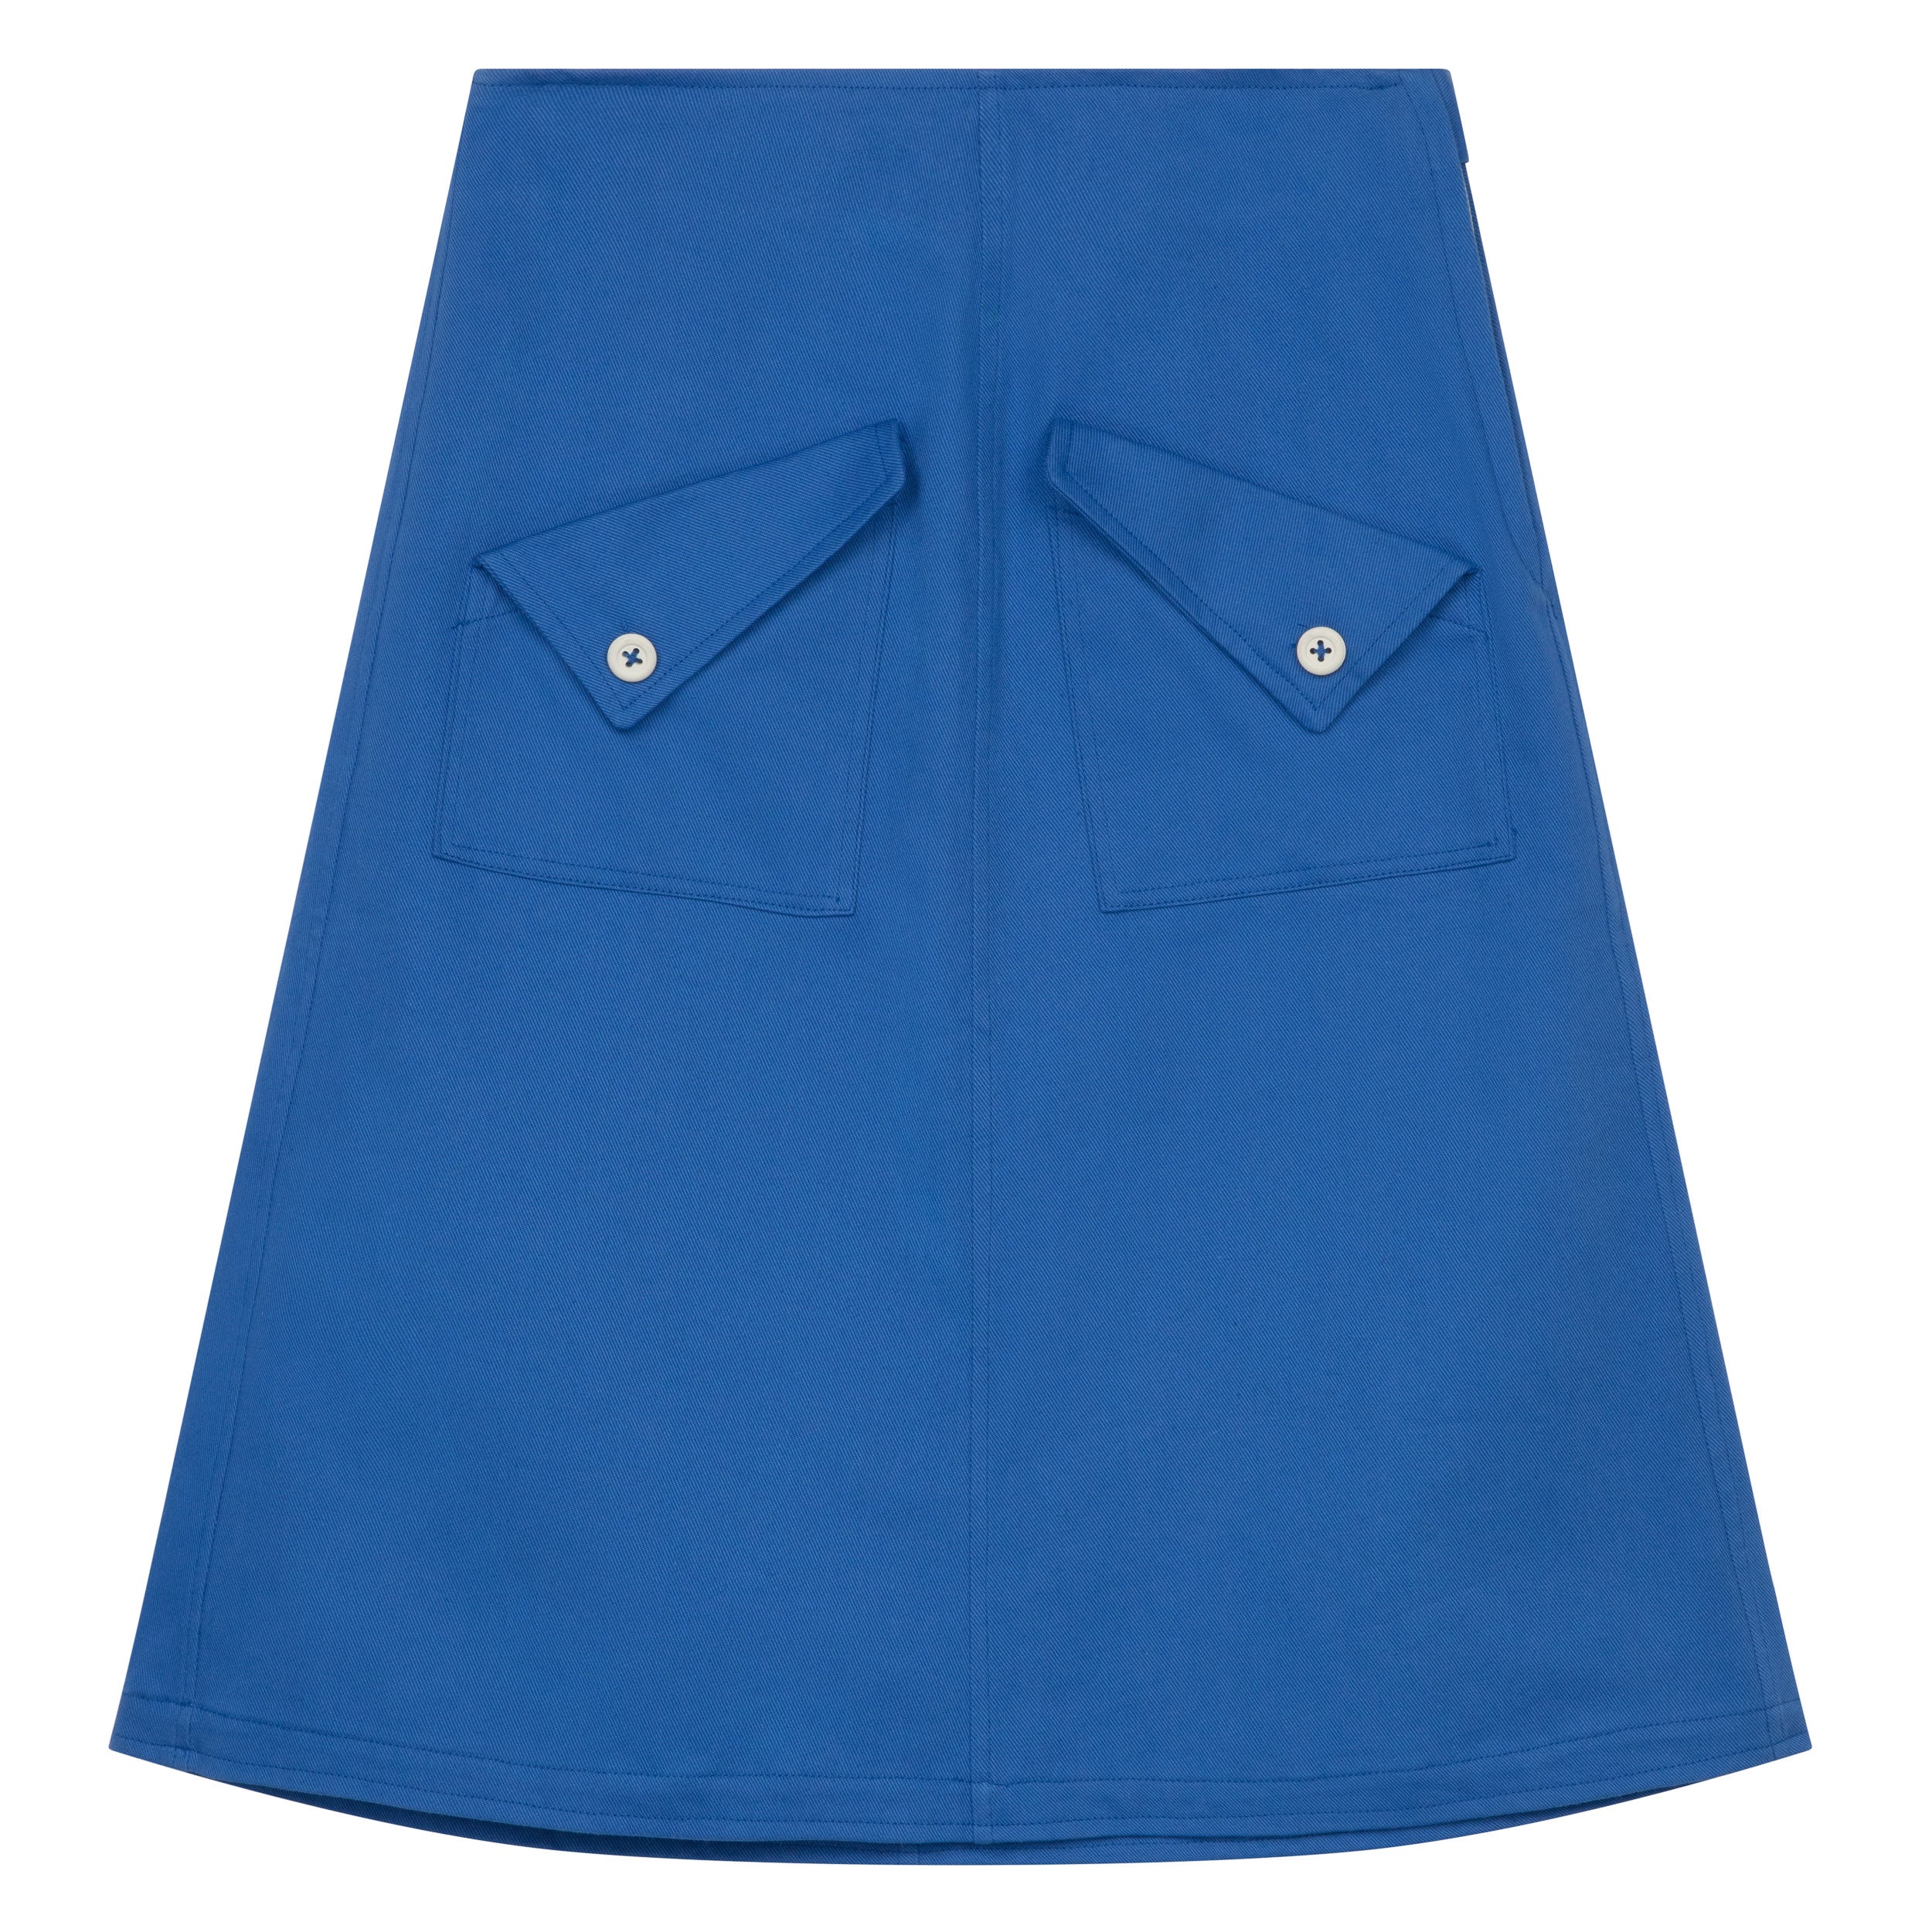 Carrier Company Mum Skirt in Norfolk Sky Blue